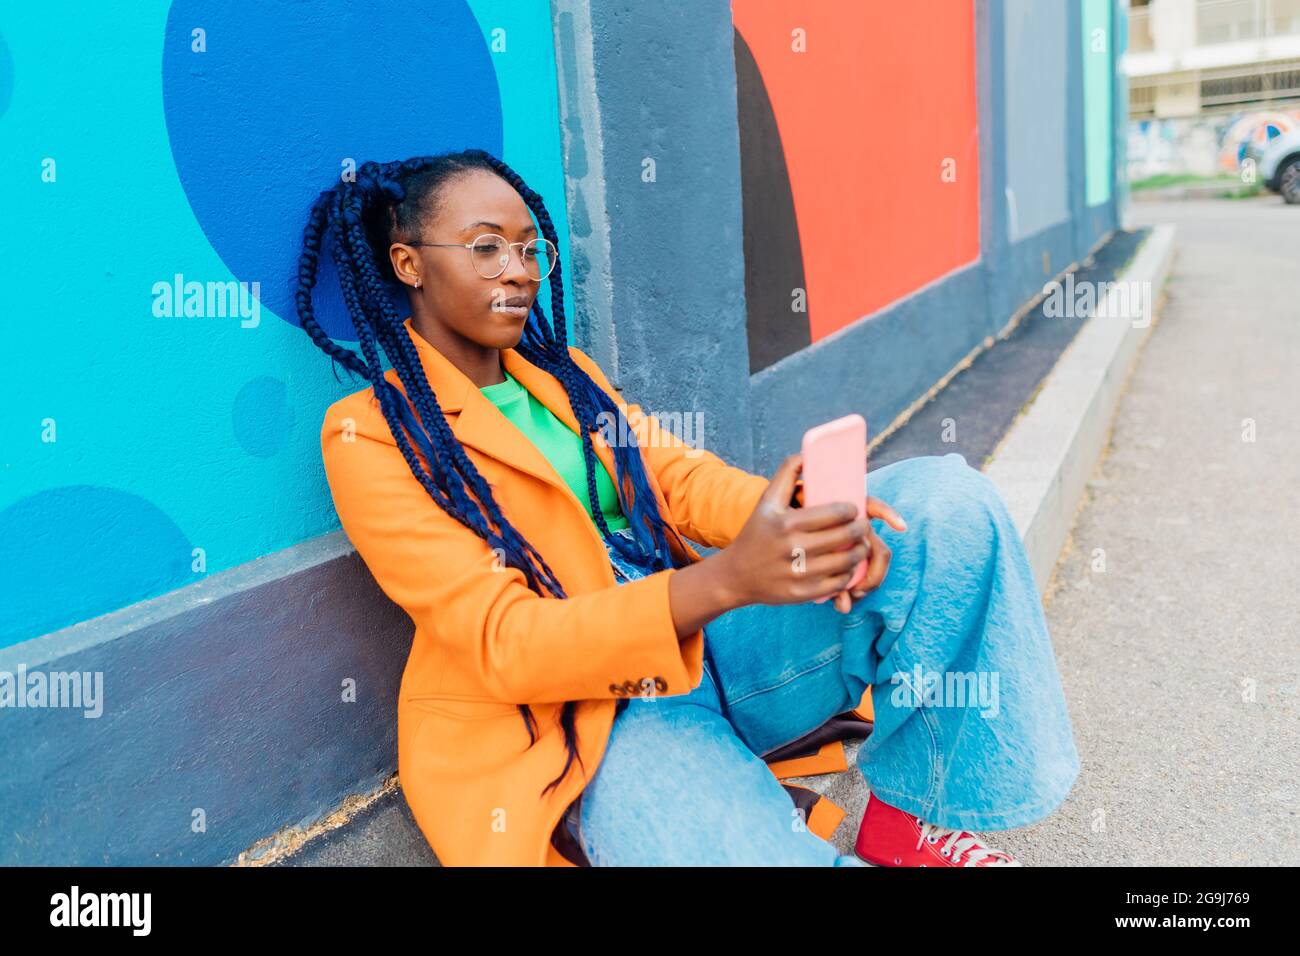 Italia, Milano, Donna con trecce seduta da parete colorata, utilizzando smartphone Foto Stock